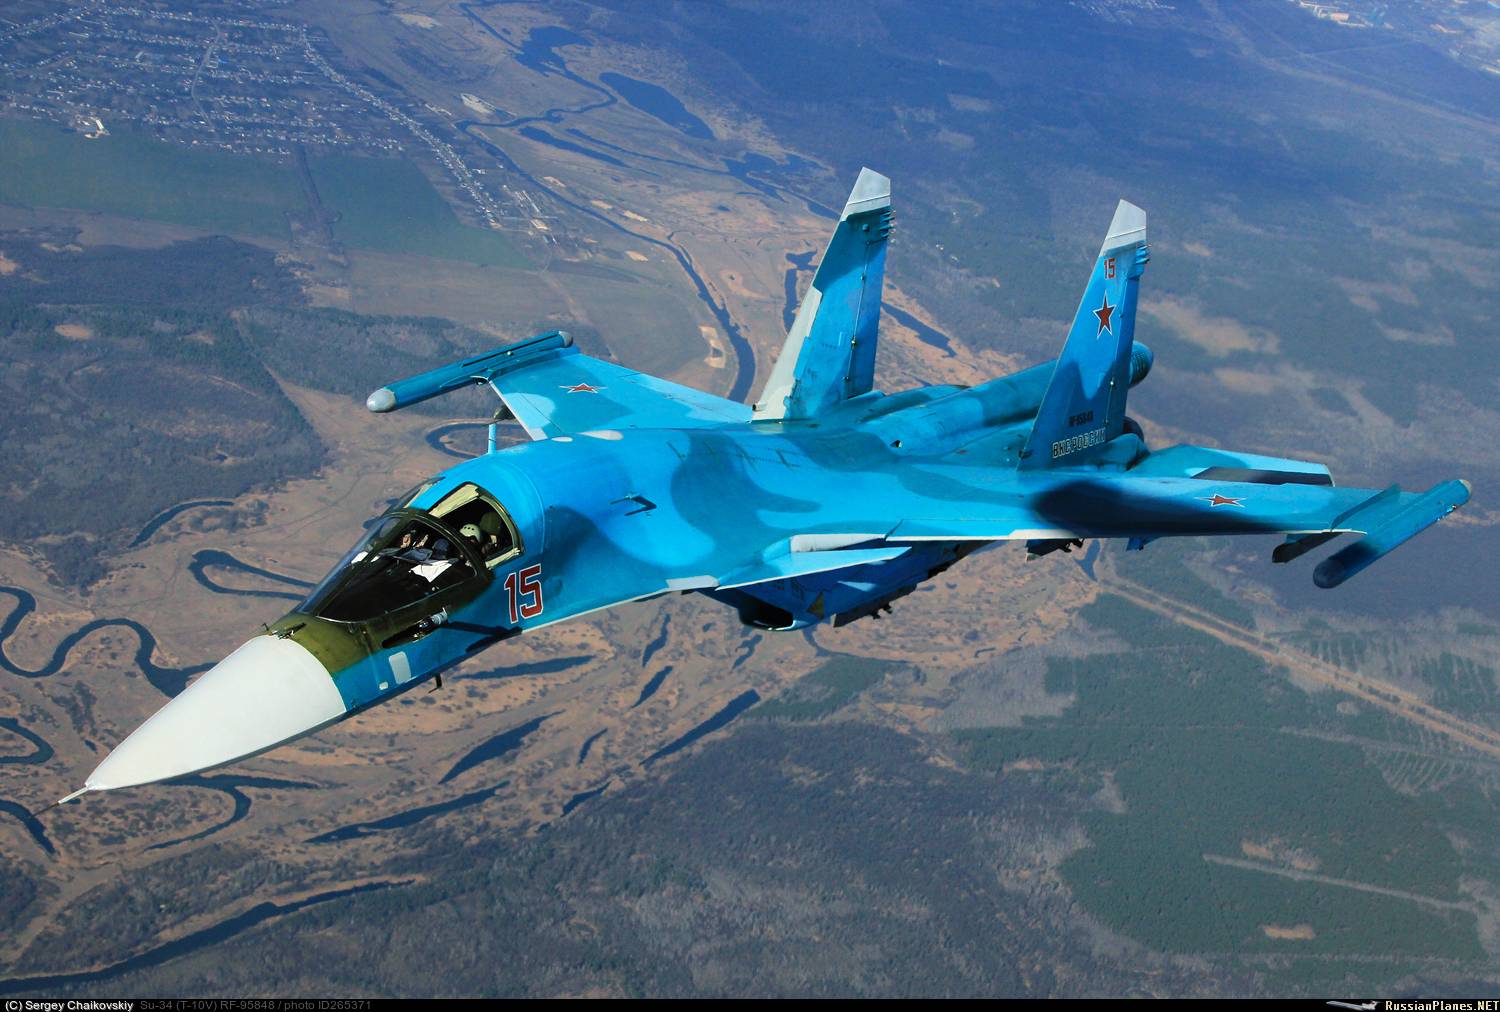 Лучший российский самолёт истребитель су 27 - авиация россии
лучший российский самолёт истребитель су 27 - авиация россии